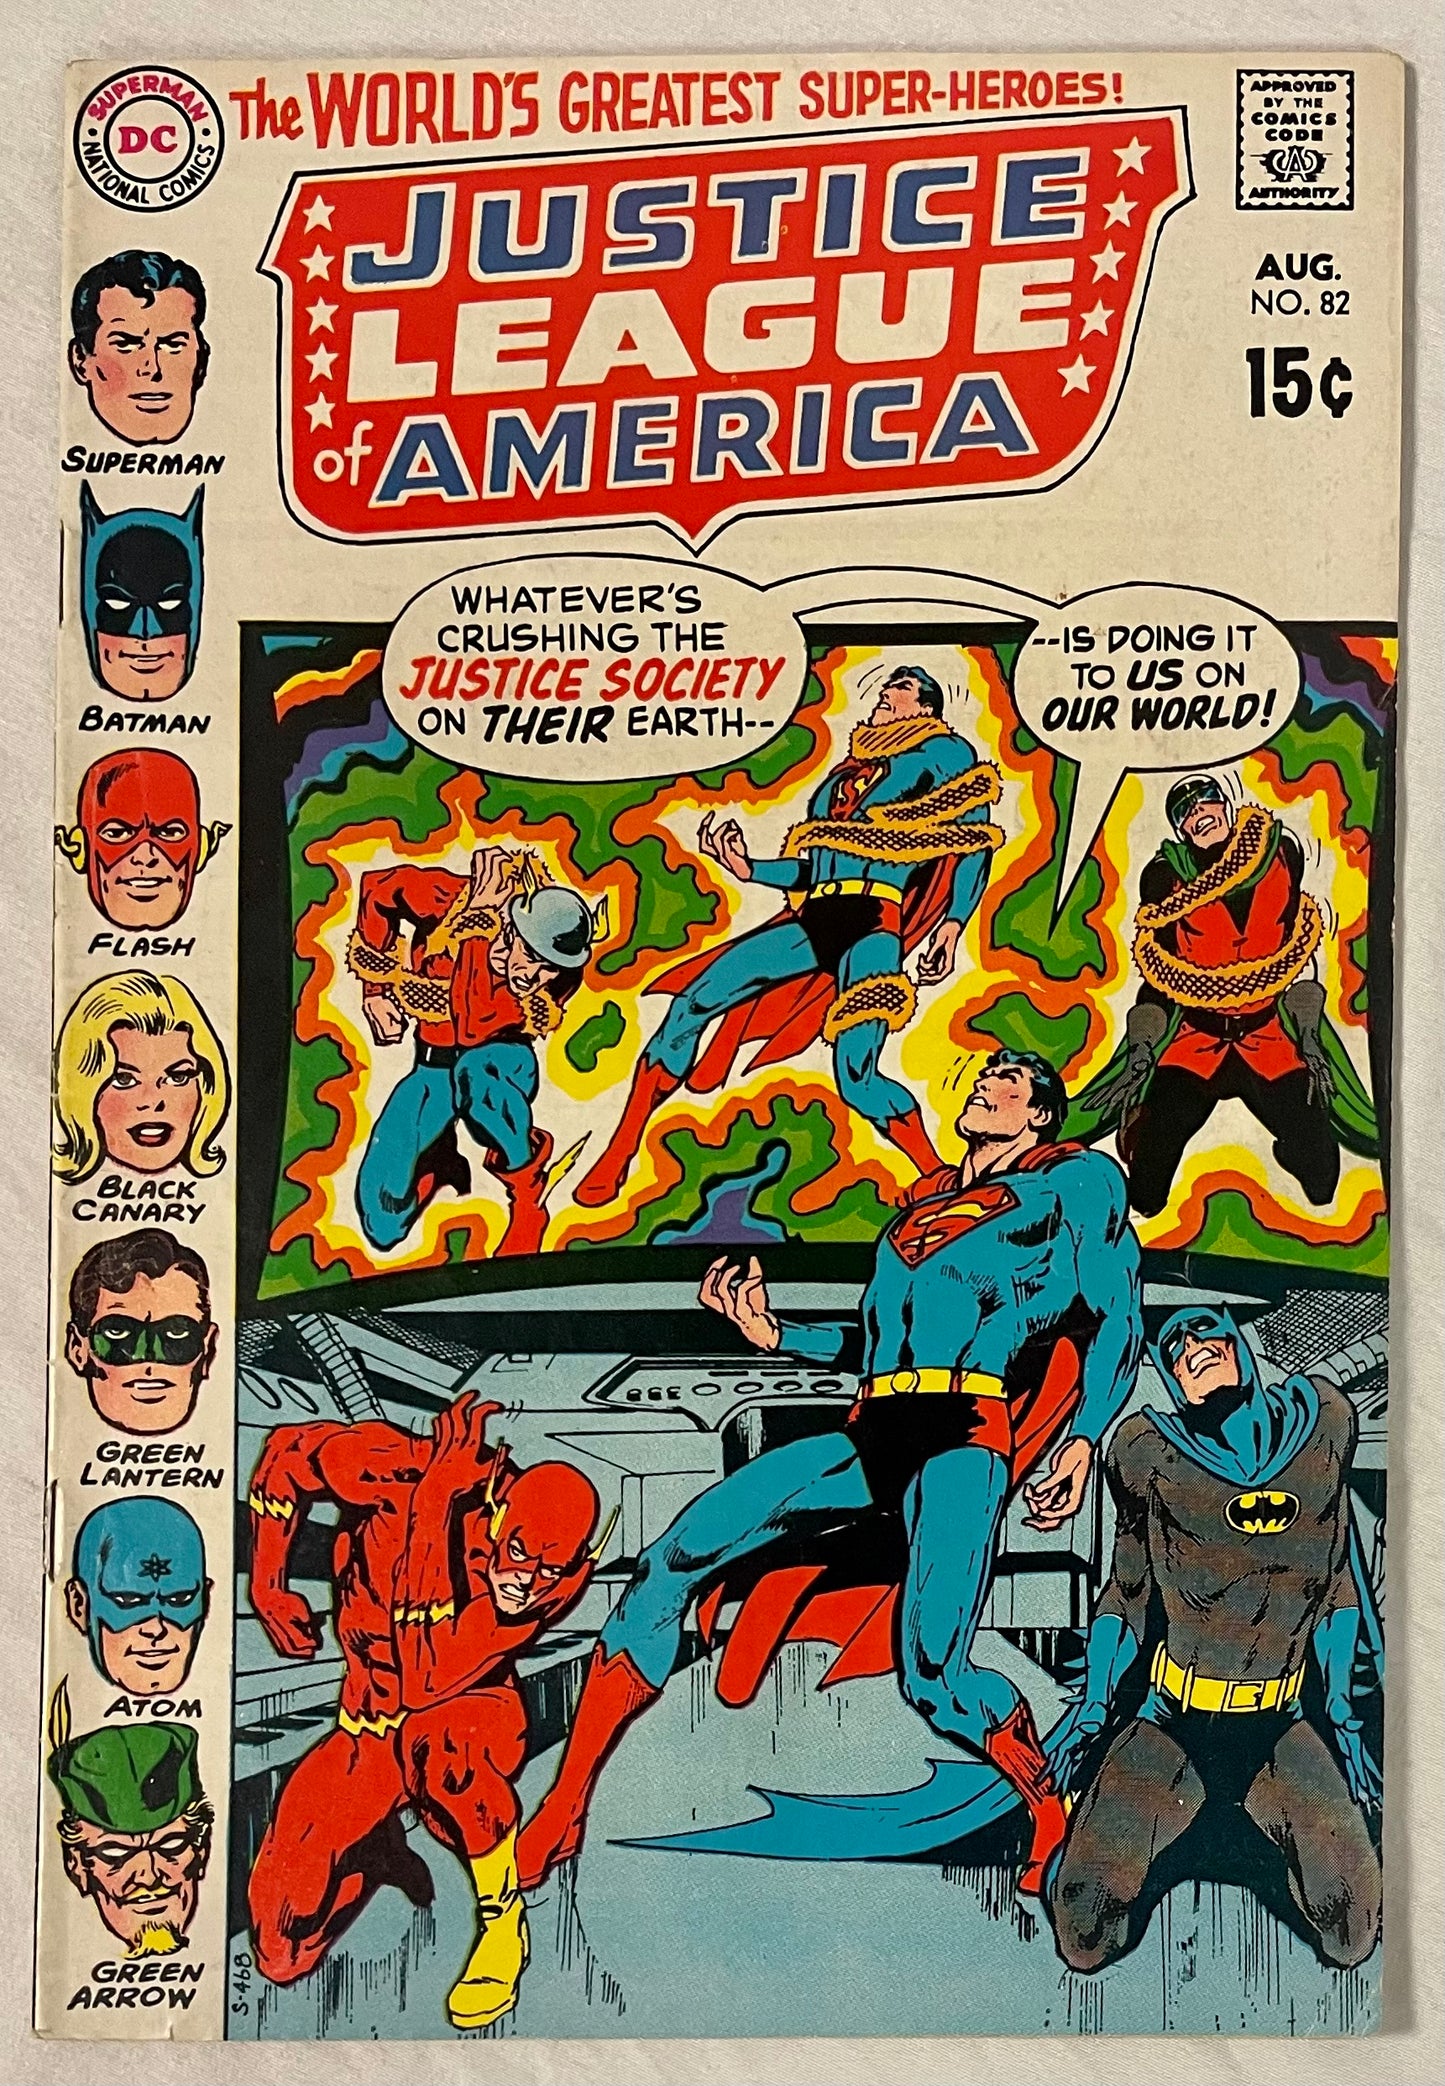 DC Comics Justice League of America No. 82